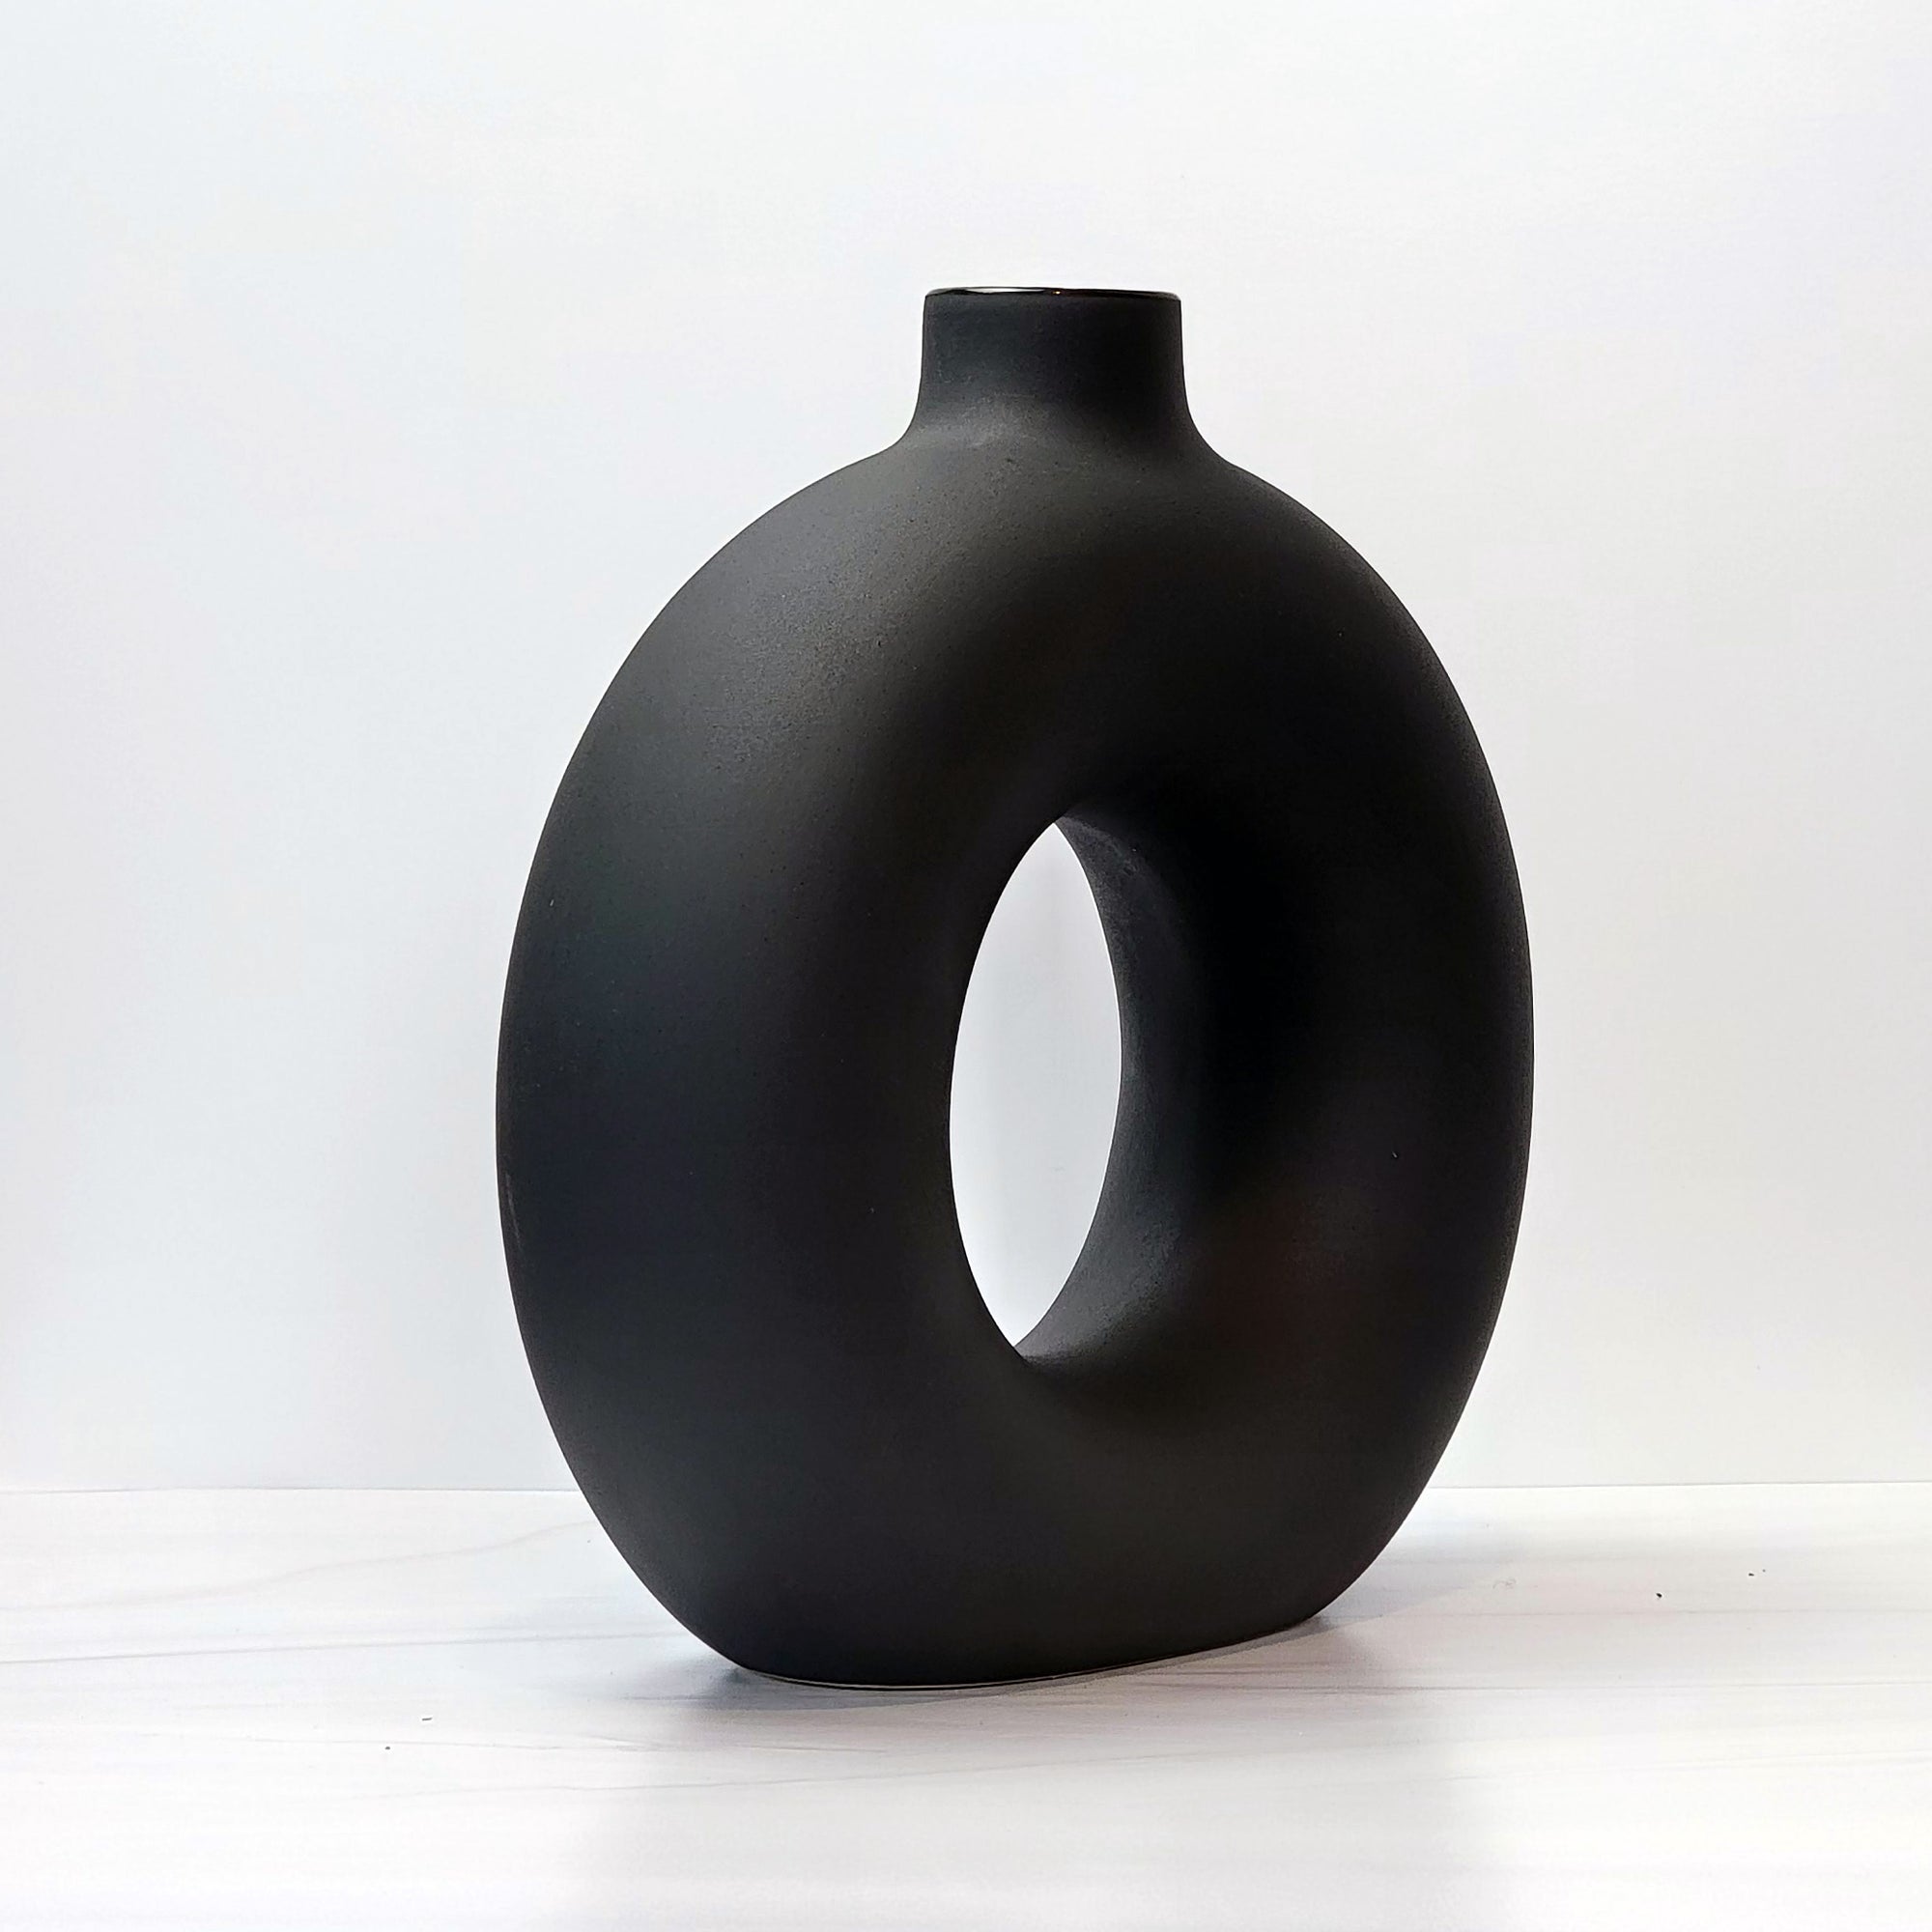 Large black doughnut-shaped Otto vase, angled.